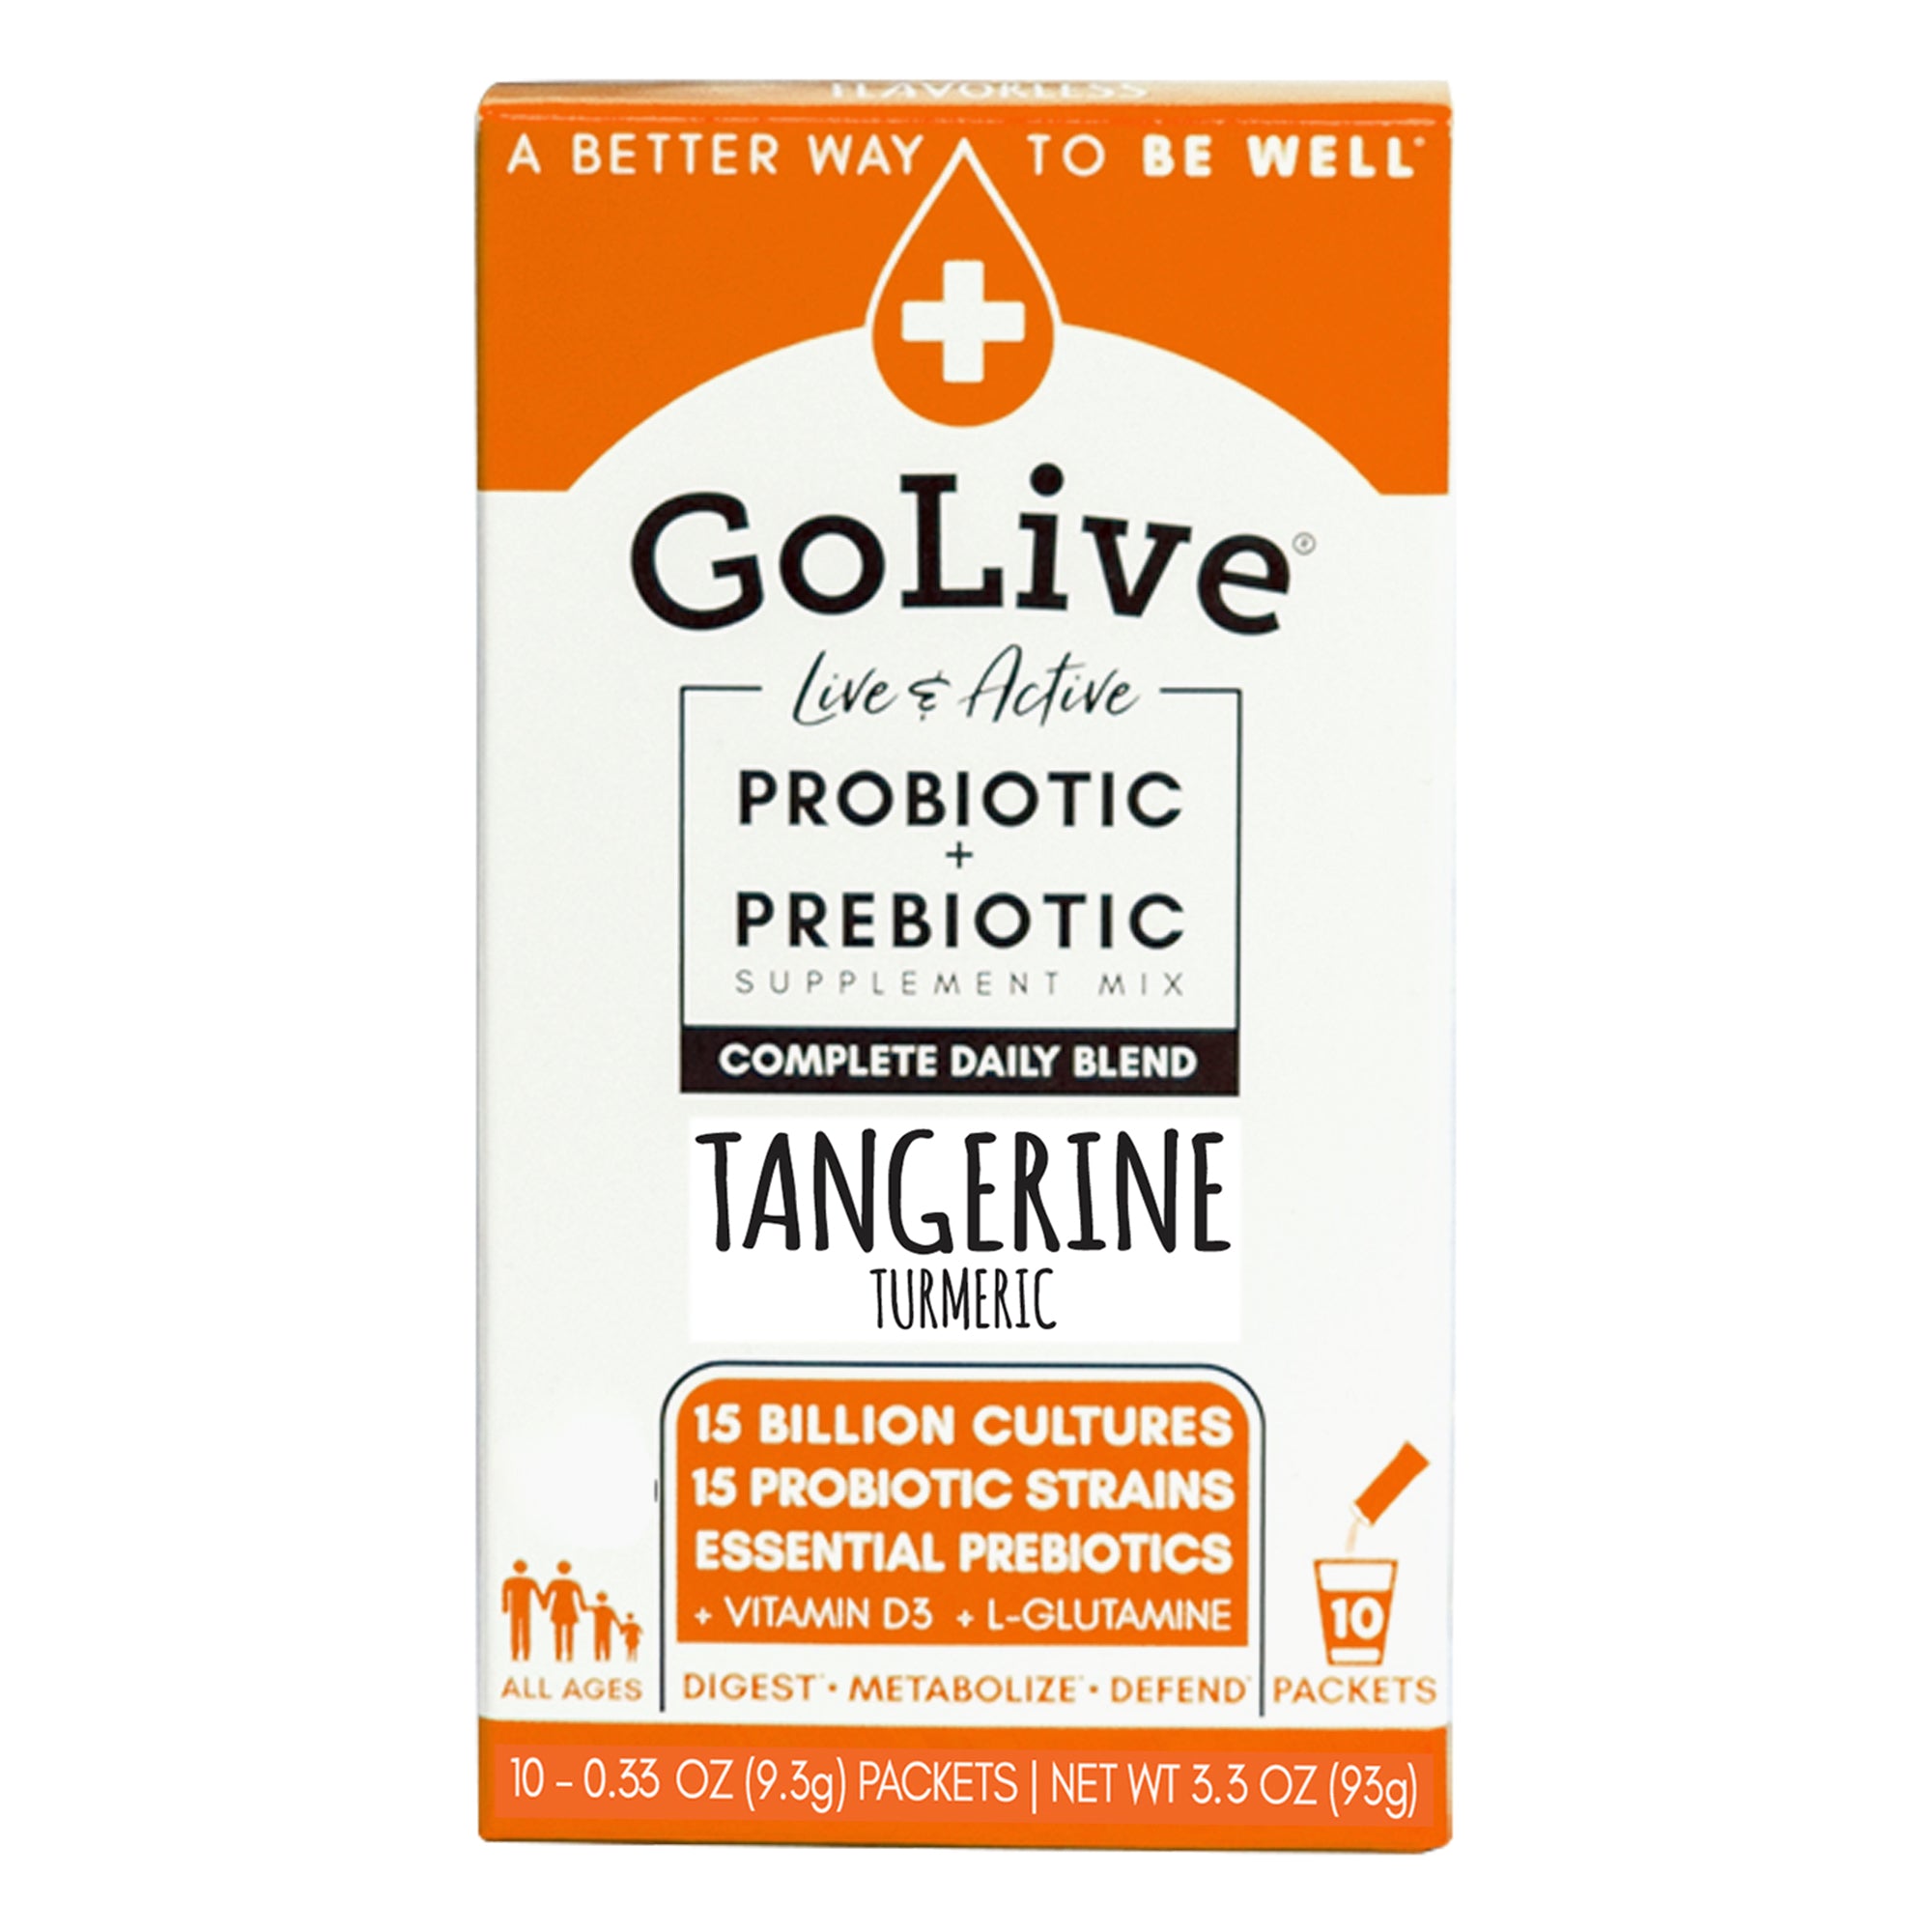 Tangerine Turmeric Probiotics Plus Prebiotics Blend